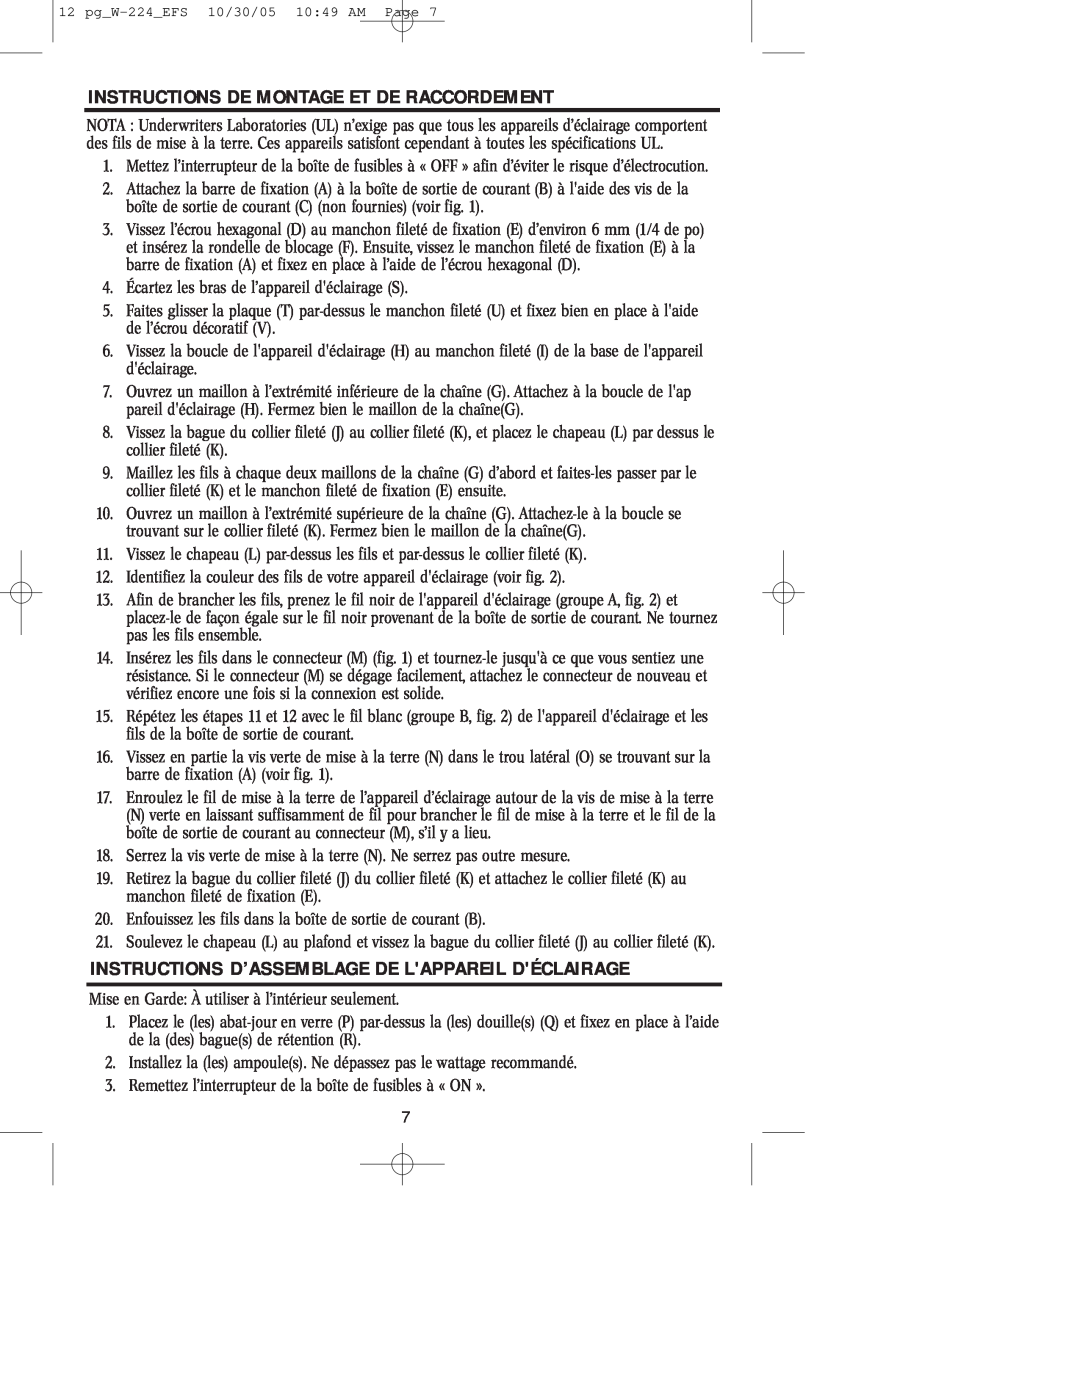 Westinghouse W-224 Instructions De Montage Et De Raccordement, Instructions D’Assemblage De Lappareil Déclairage 